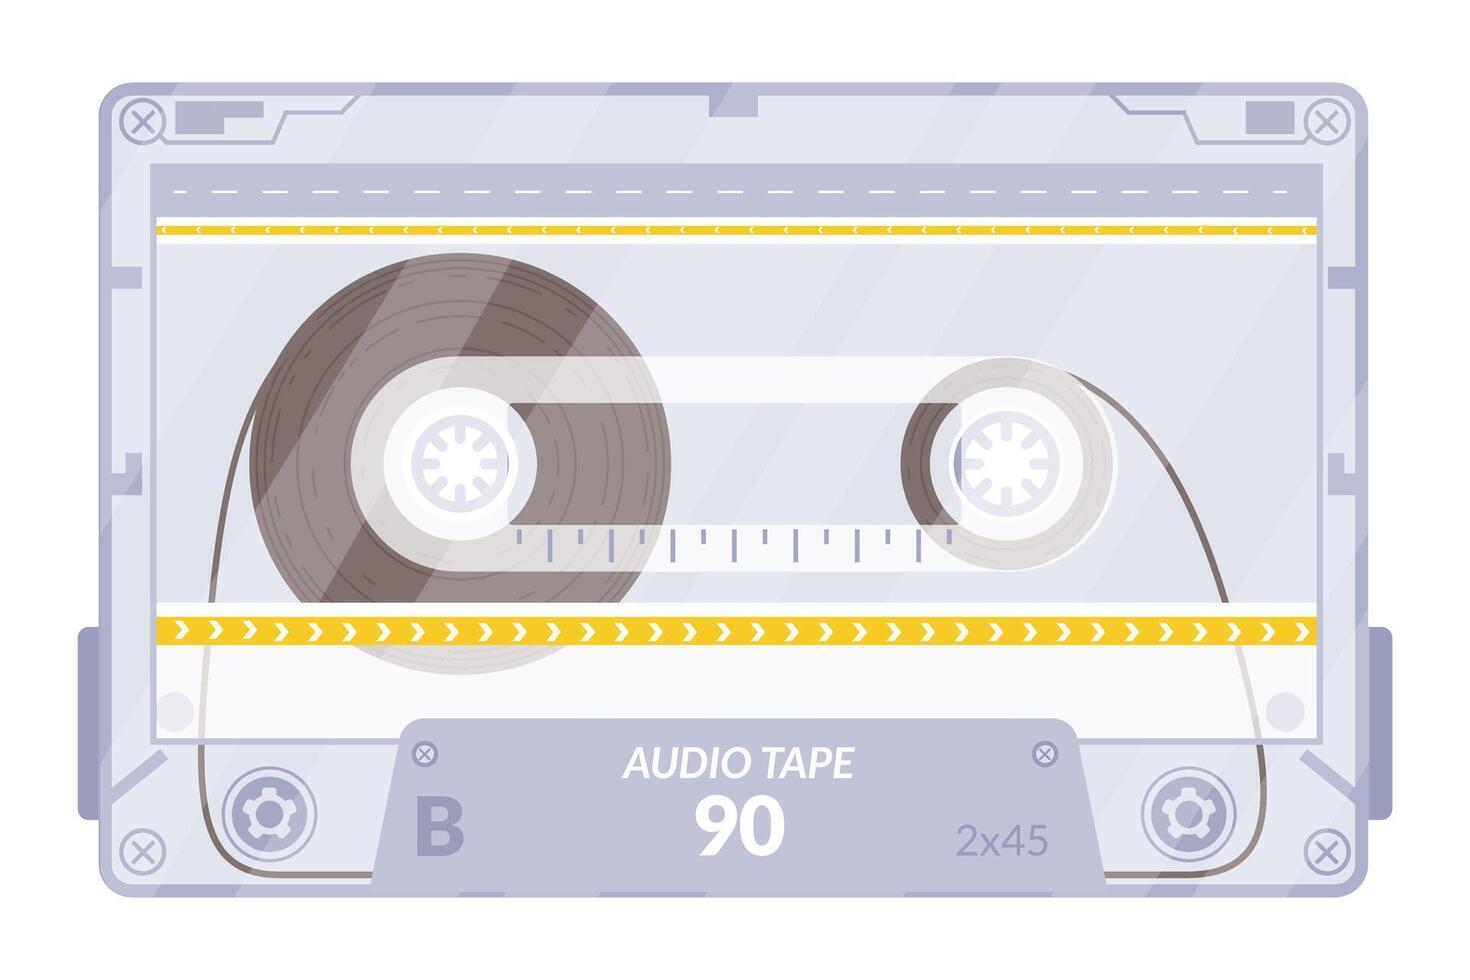 Clásico cinta casete. retro mixtape, 1980 popular canciones cintas y estéreo música casetes 90s de alta fidelidad disco danza cinta de audio, término análogo jugador grabar casete. aislado símbolos vector